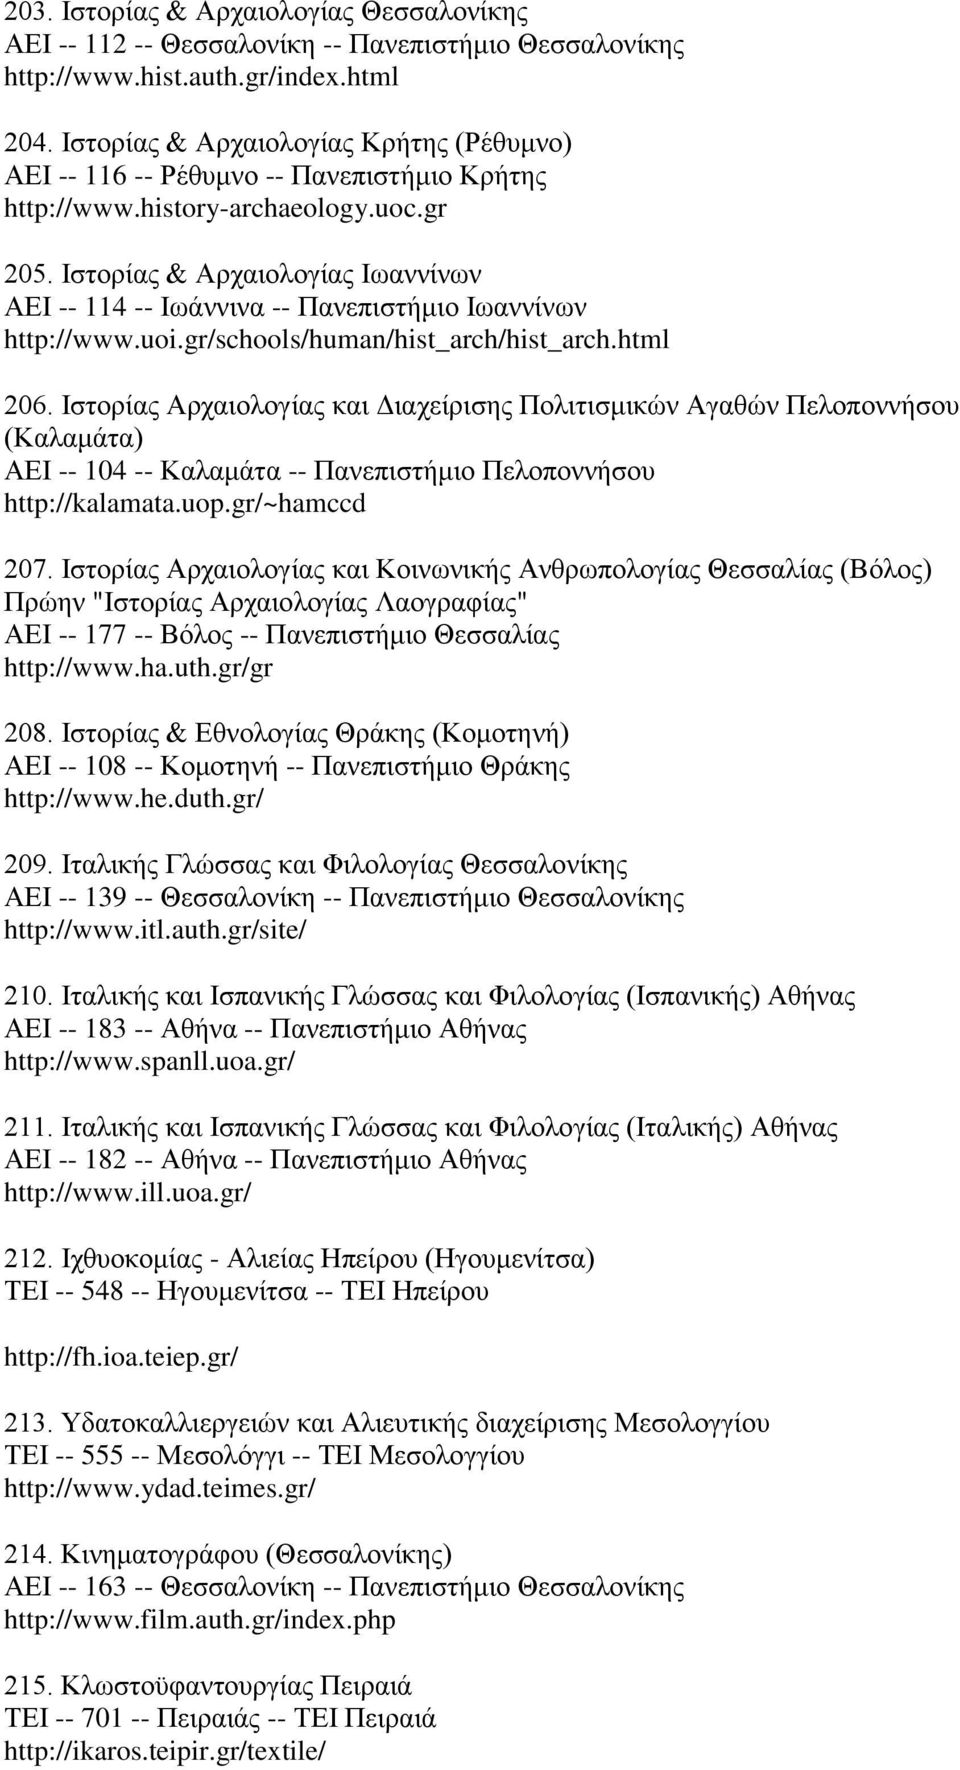 Ιστορίας & Αρχαιολογίας Ιωαννίνων ΑΕΙ -- 114 -- Ιωάννινα -- Πανεπιστήμιο Ιωαννίνων http://www.uoi.gr/schools/human/hist_arch/hist_arch.html 206.